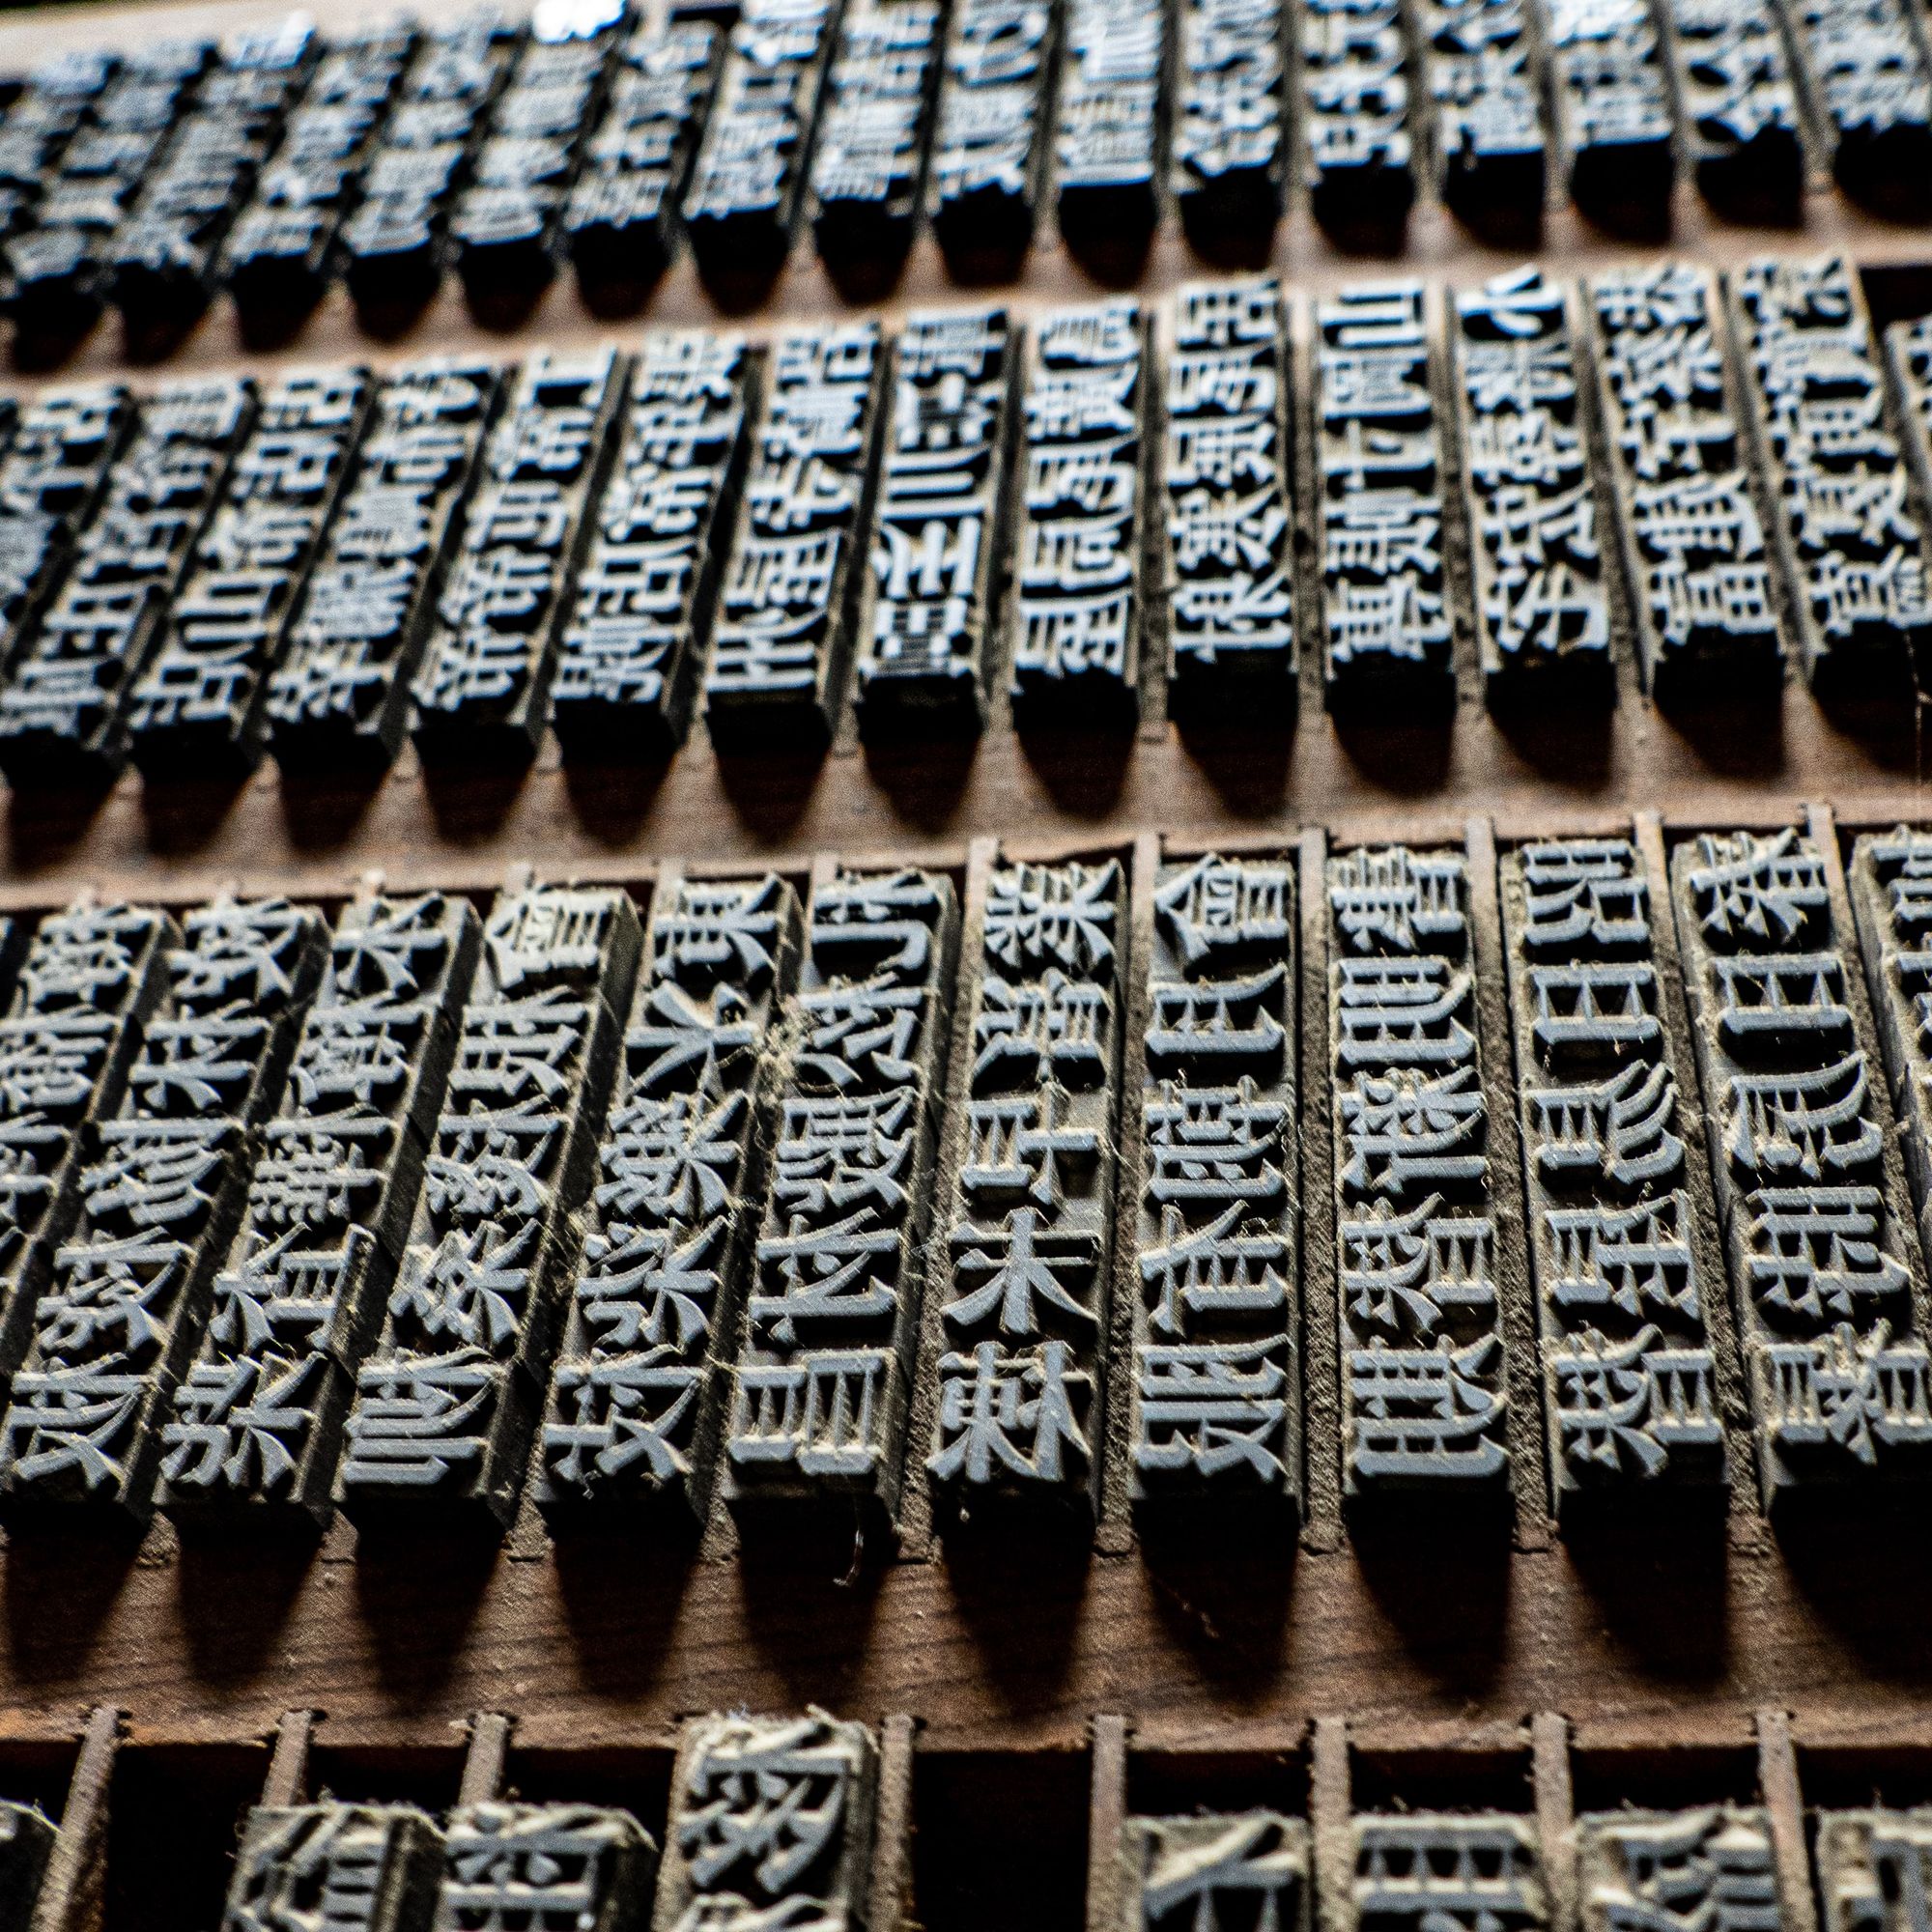 Chinese printing woodblocks